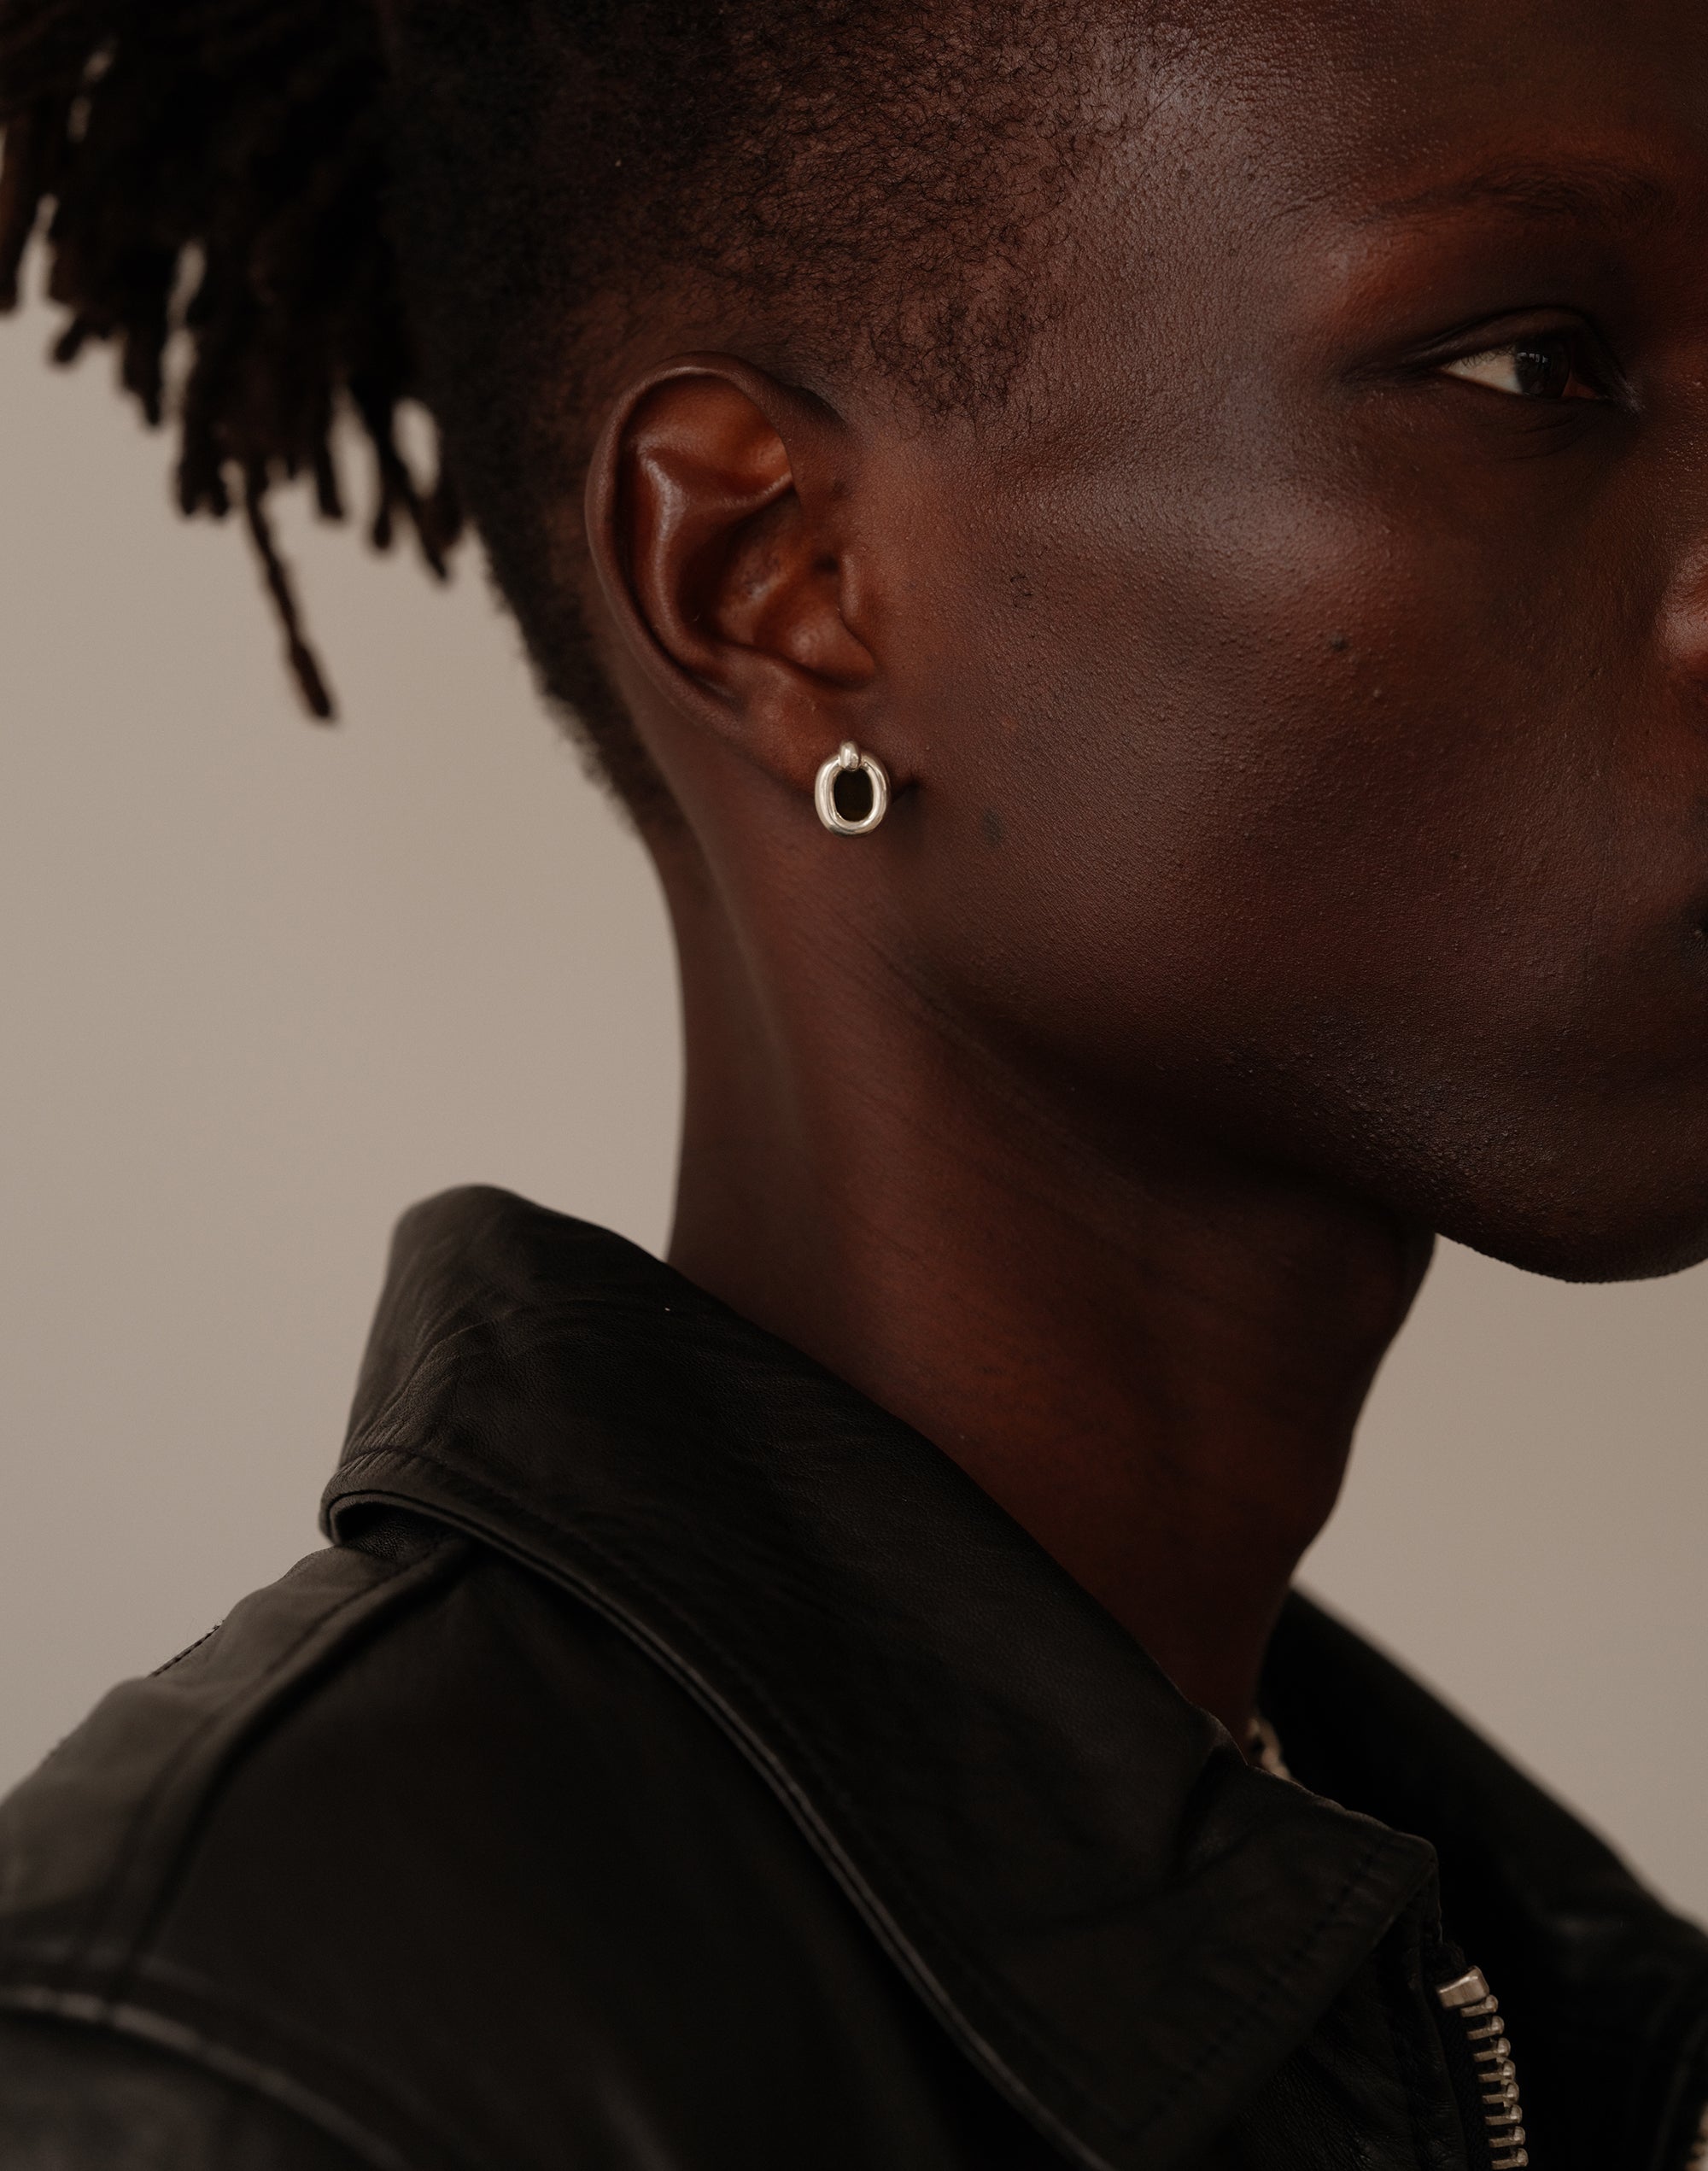 Core Loop Earrings | Small